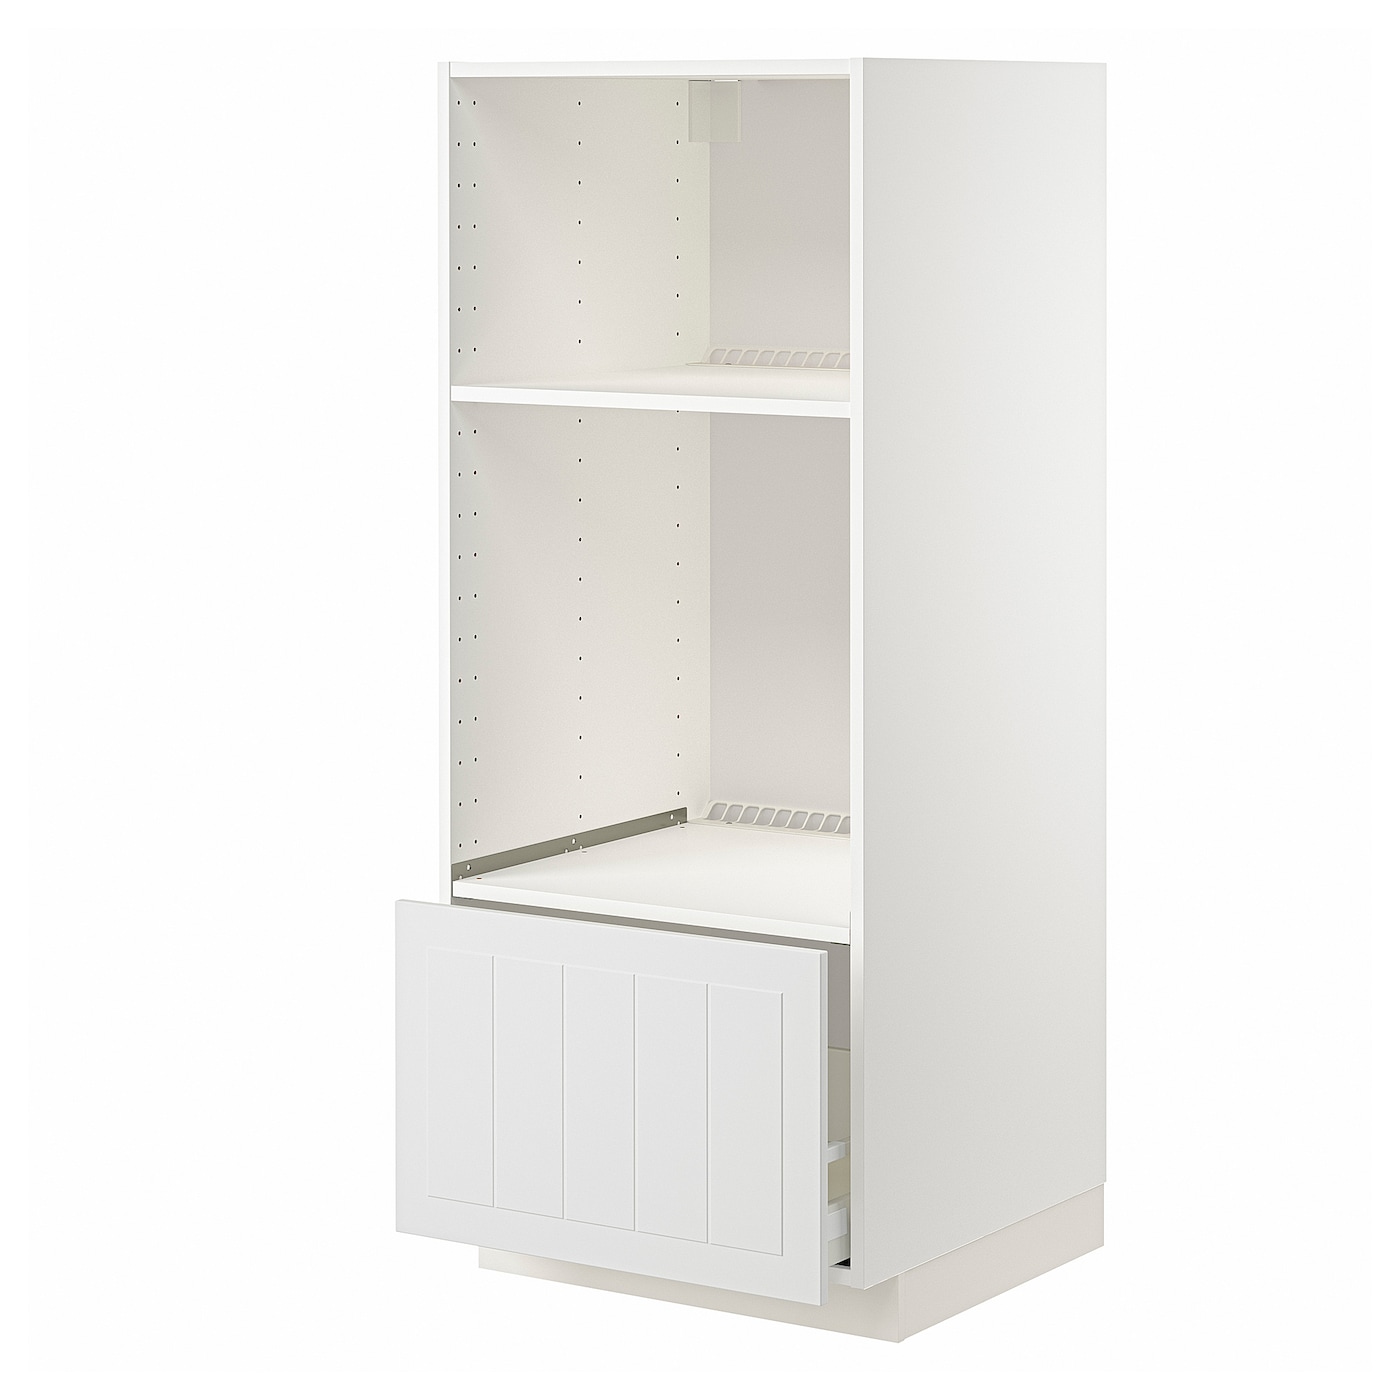 Напольный шкаф  - IKEA METOD MAXIMERA, 148x61,9x60см, белый, МЕТОД МАКСИМЕРА ИКЕА